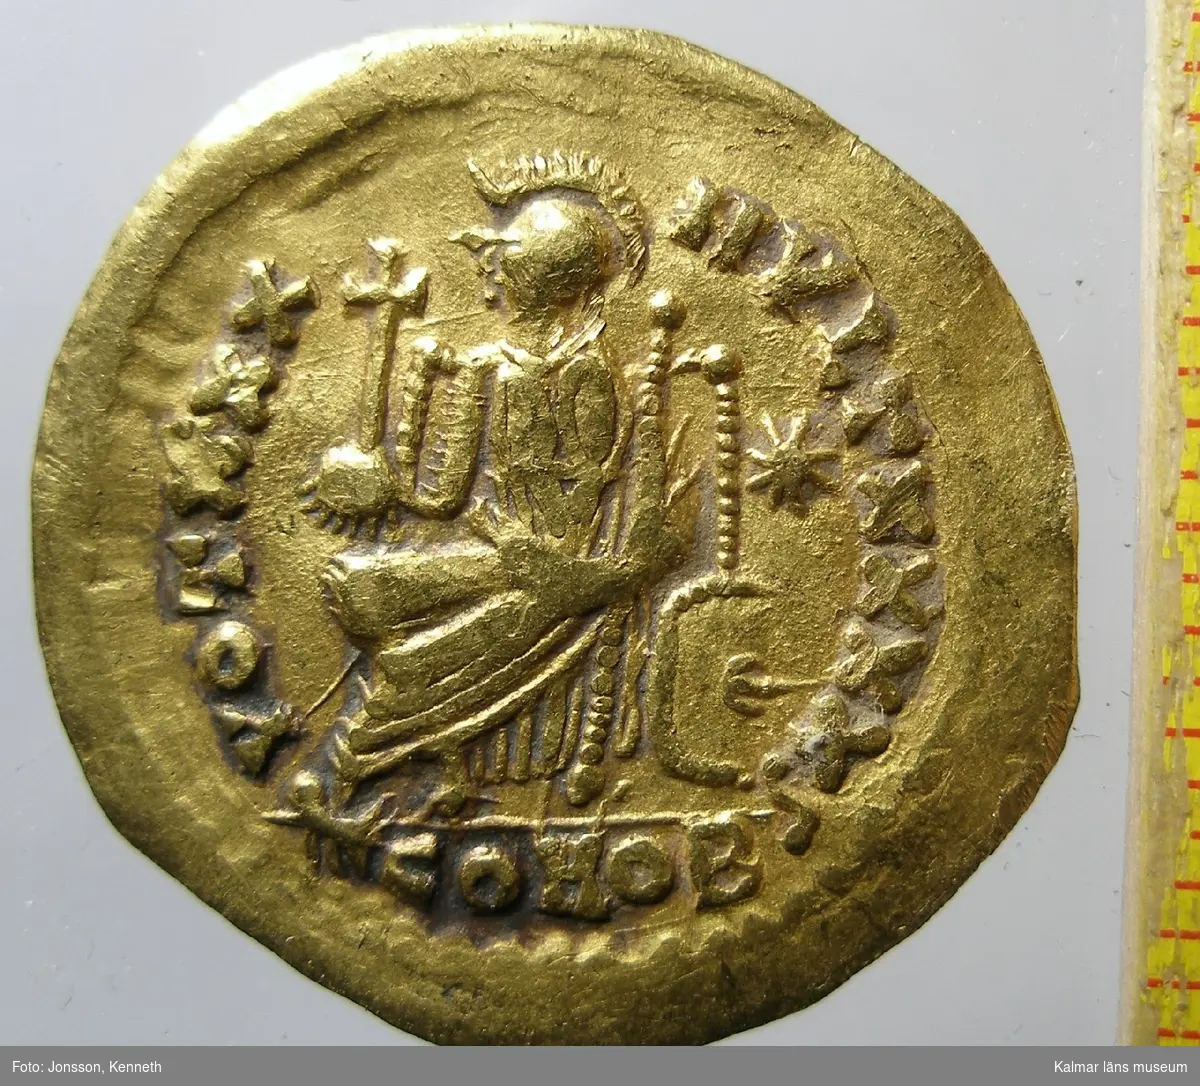 KLM 25382 Mynt, solidus, guld. Präglad för Theodosius II (408-450), imitation. Bestämning: F 345.